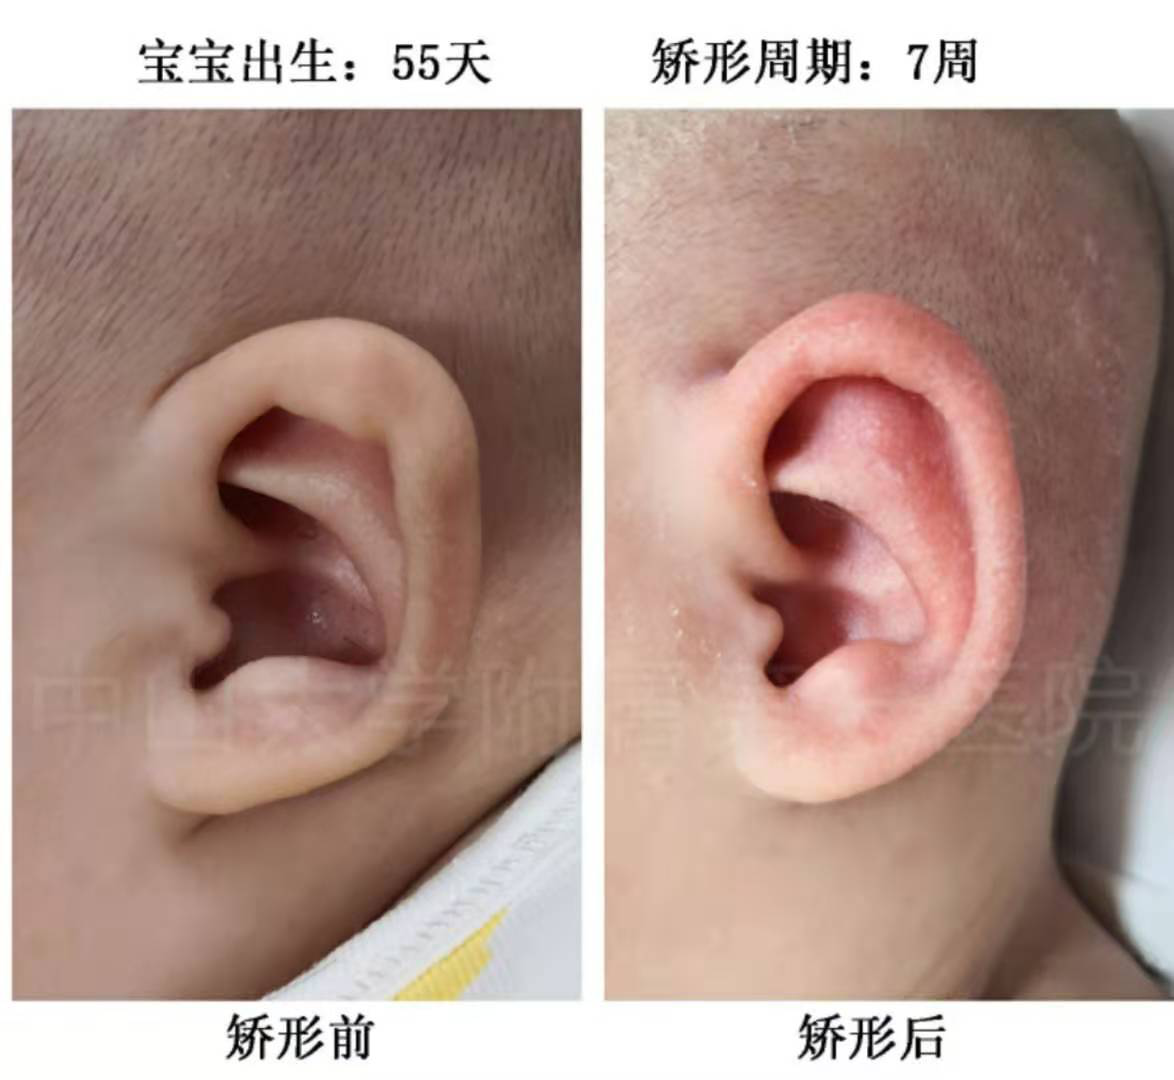 小耳畸形是怎么划分等级的 - 哔哩哔哩